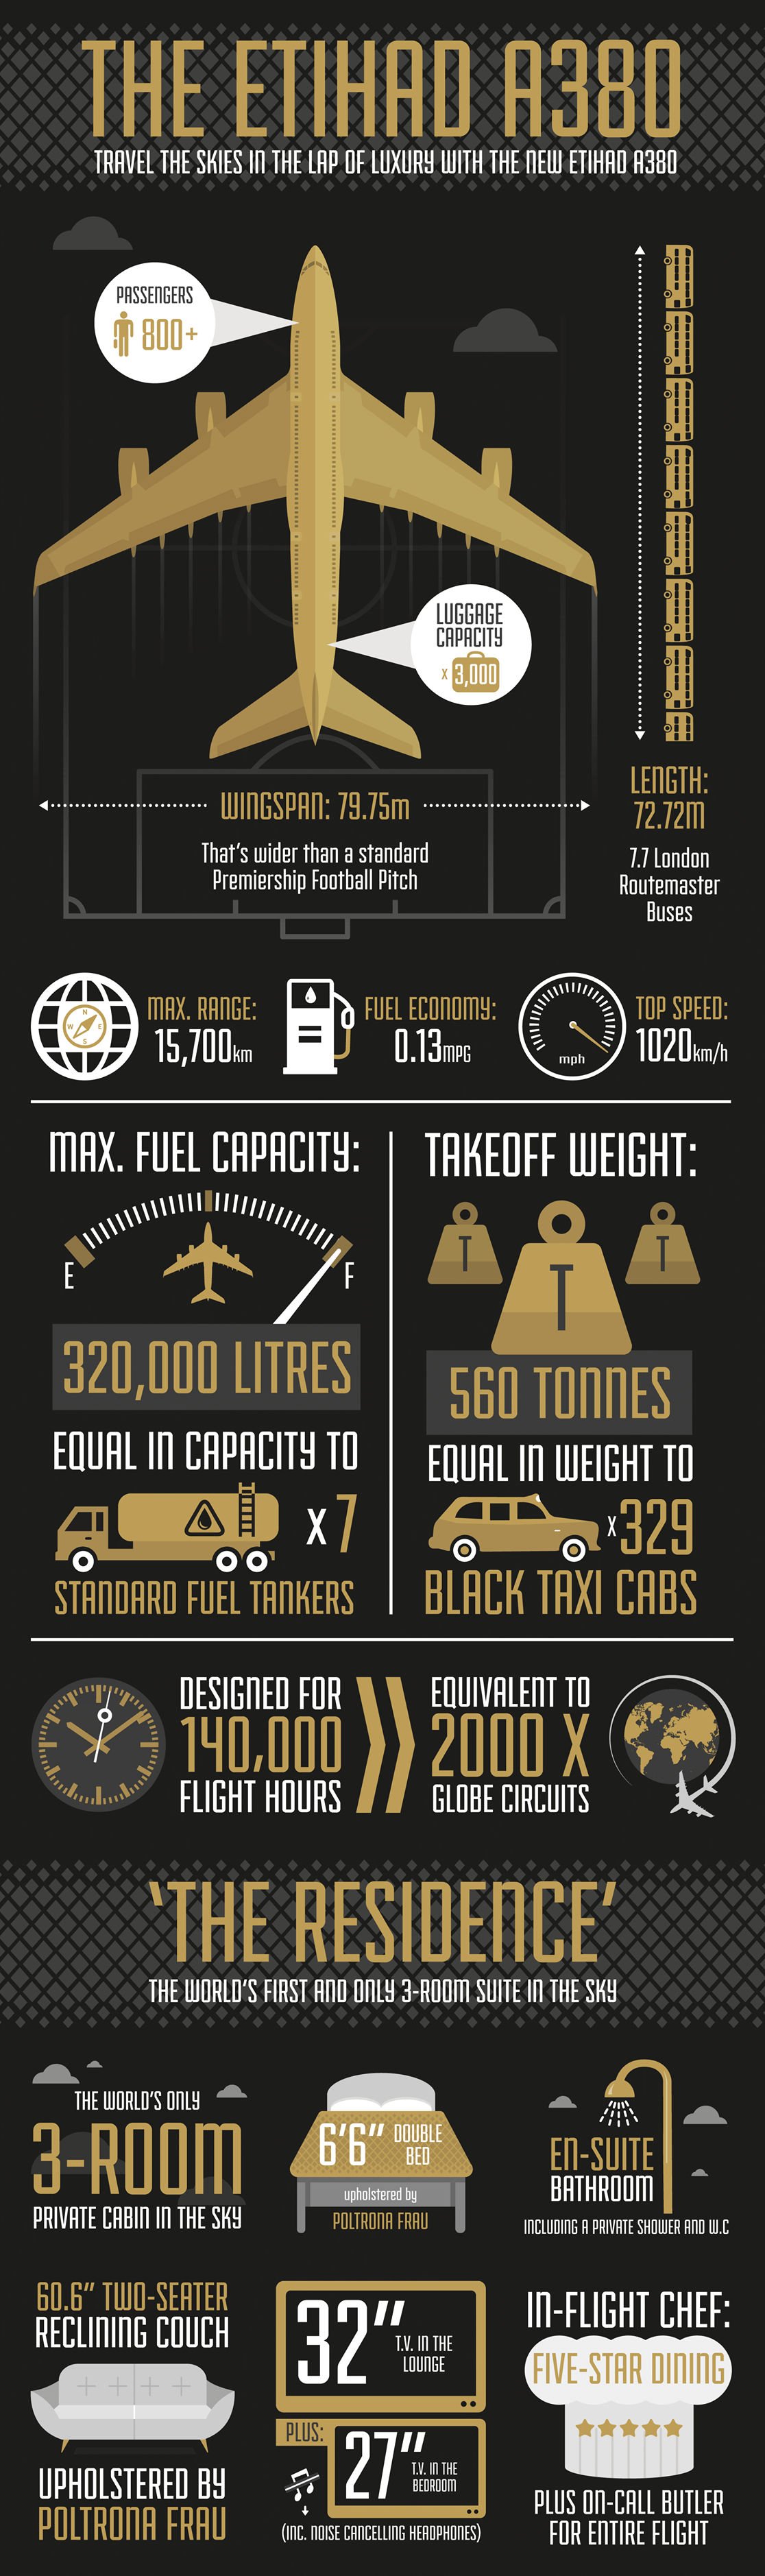 Etihad Airways_Airbus A380_infographic